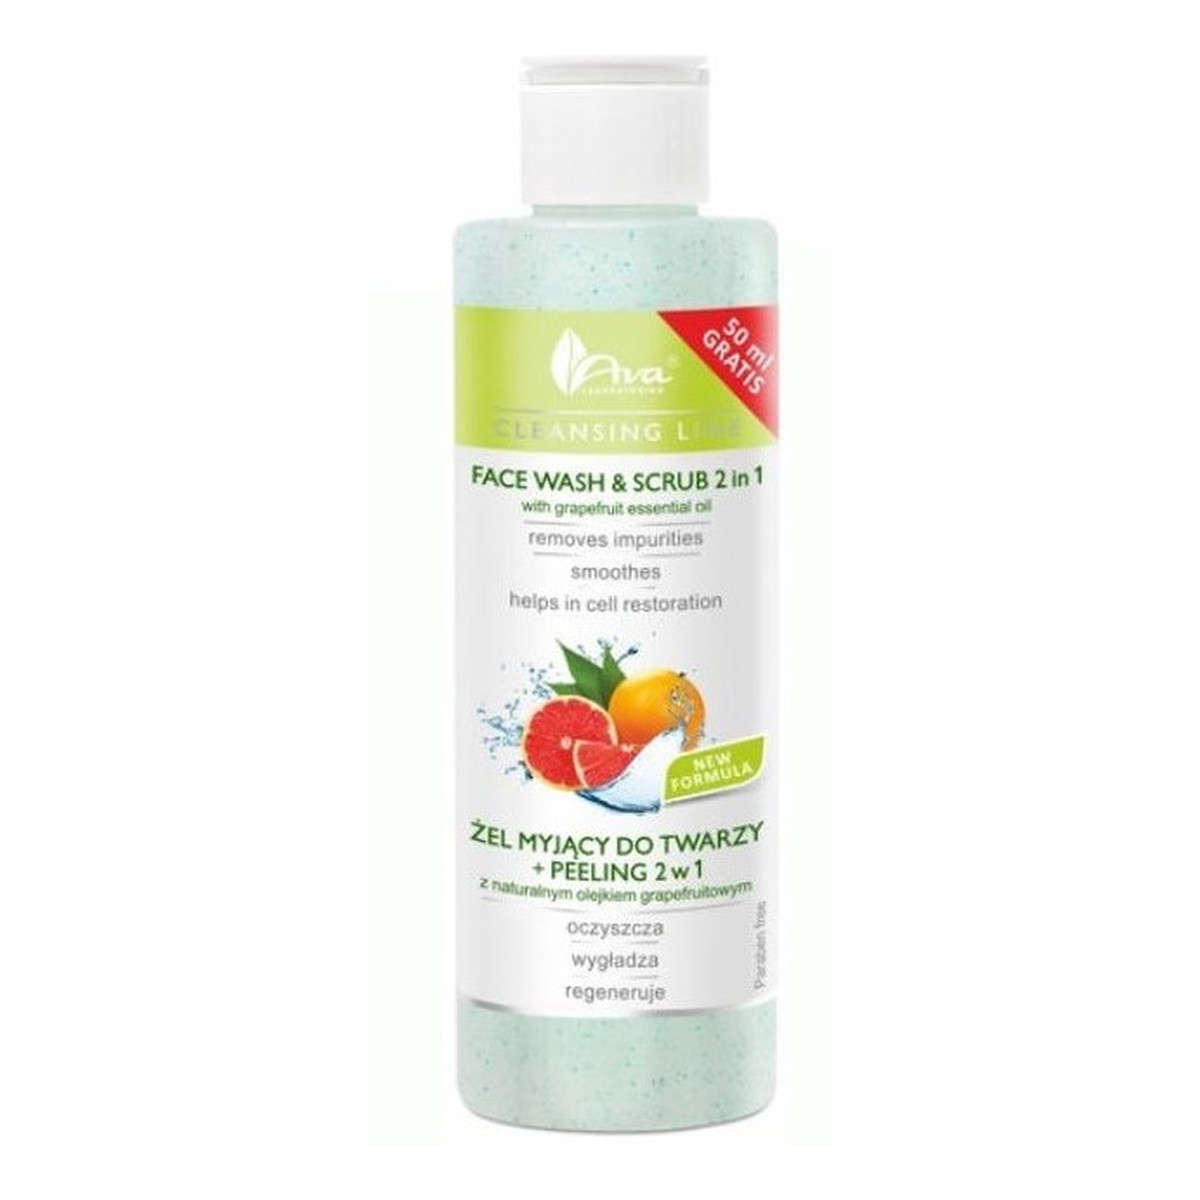 Ava Laboratorium Żel myjący do twarzy + peeling 2w1 z naturalnym olejkiem grapefruitowym 200ml